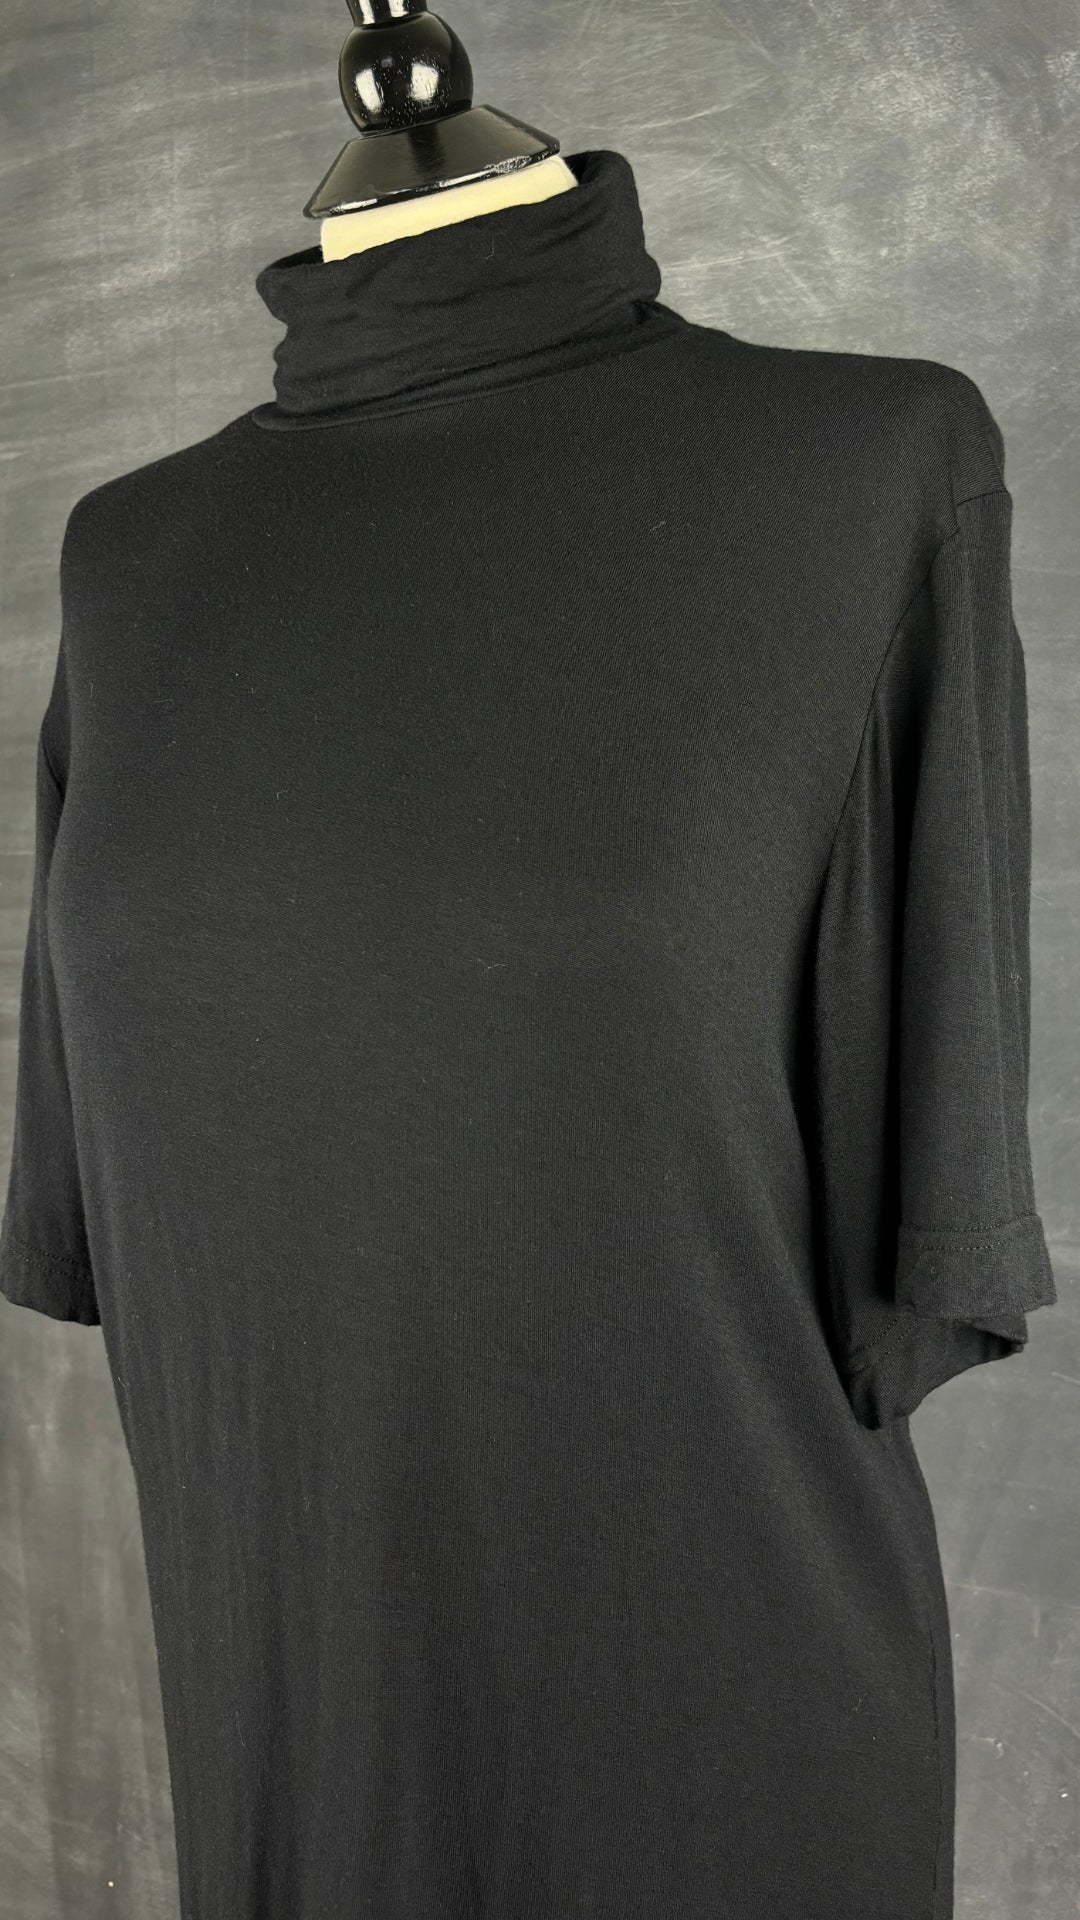 T-shirt noir à col montant Naïké Montréal, taille environ m/l. Vue de l'encolure.